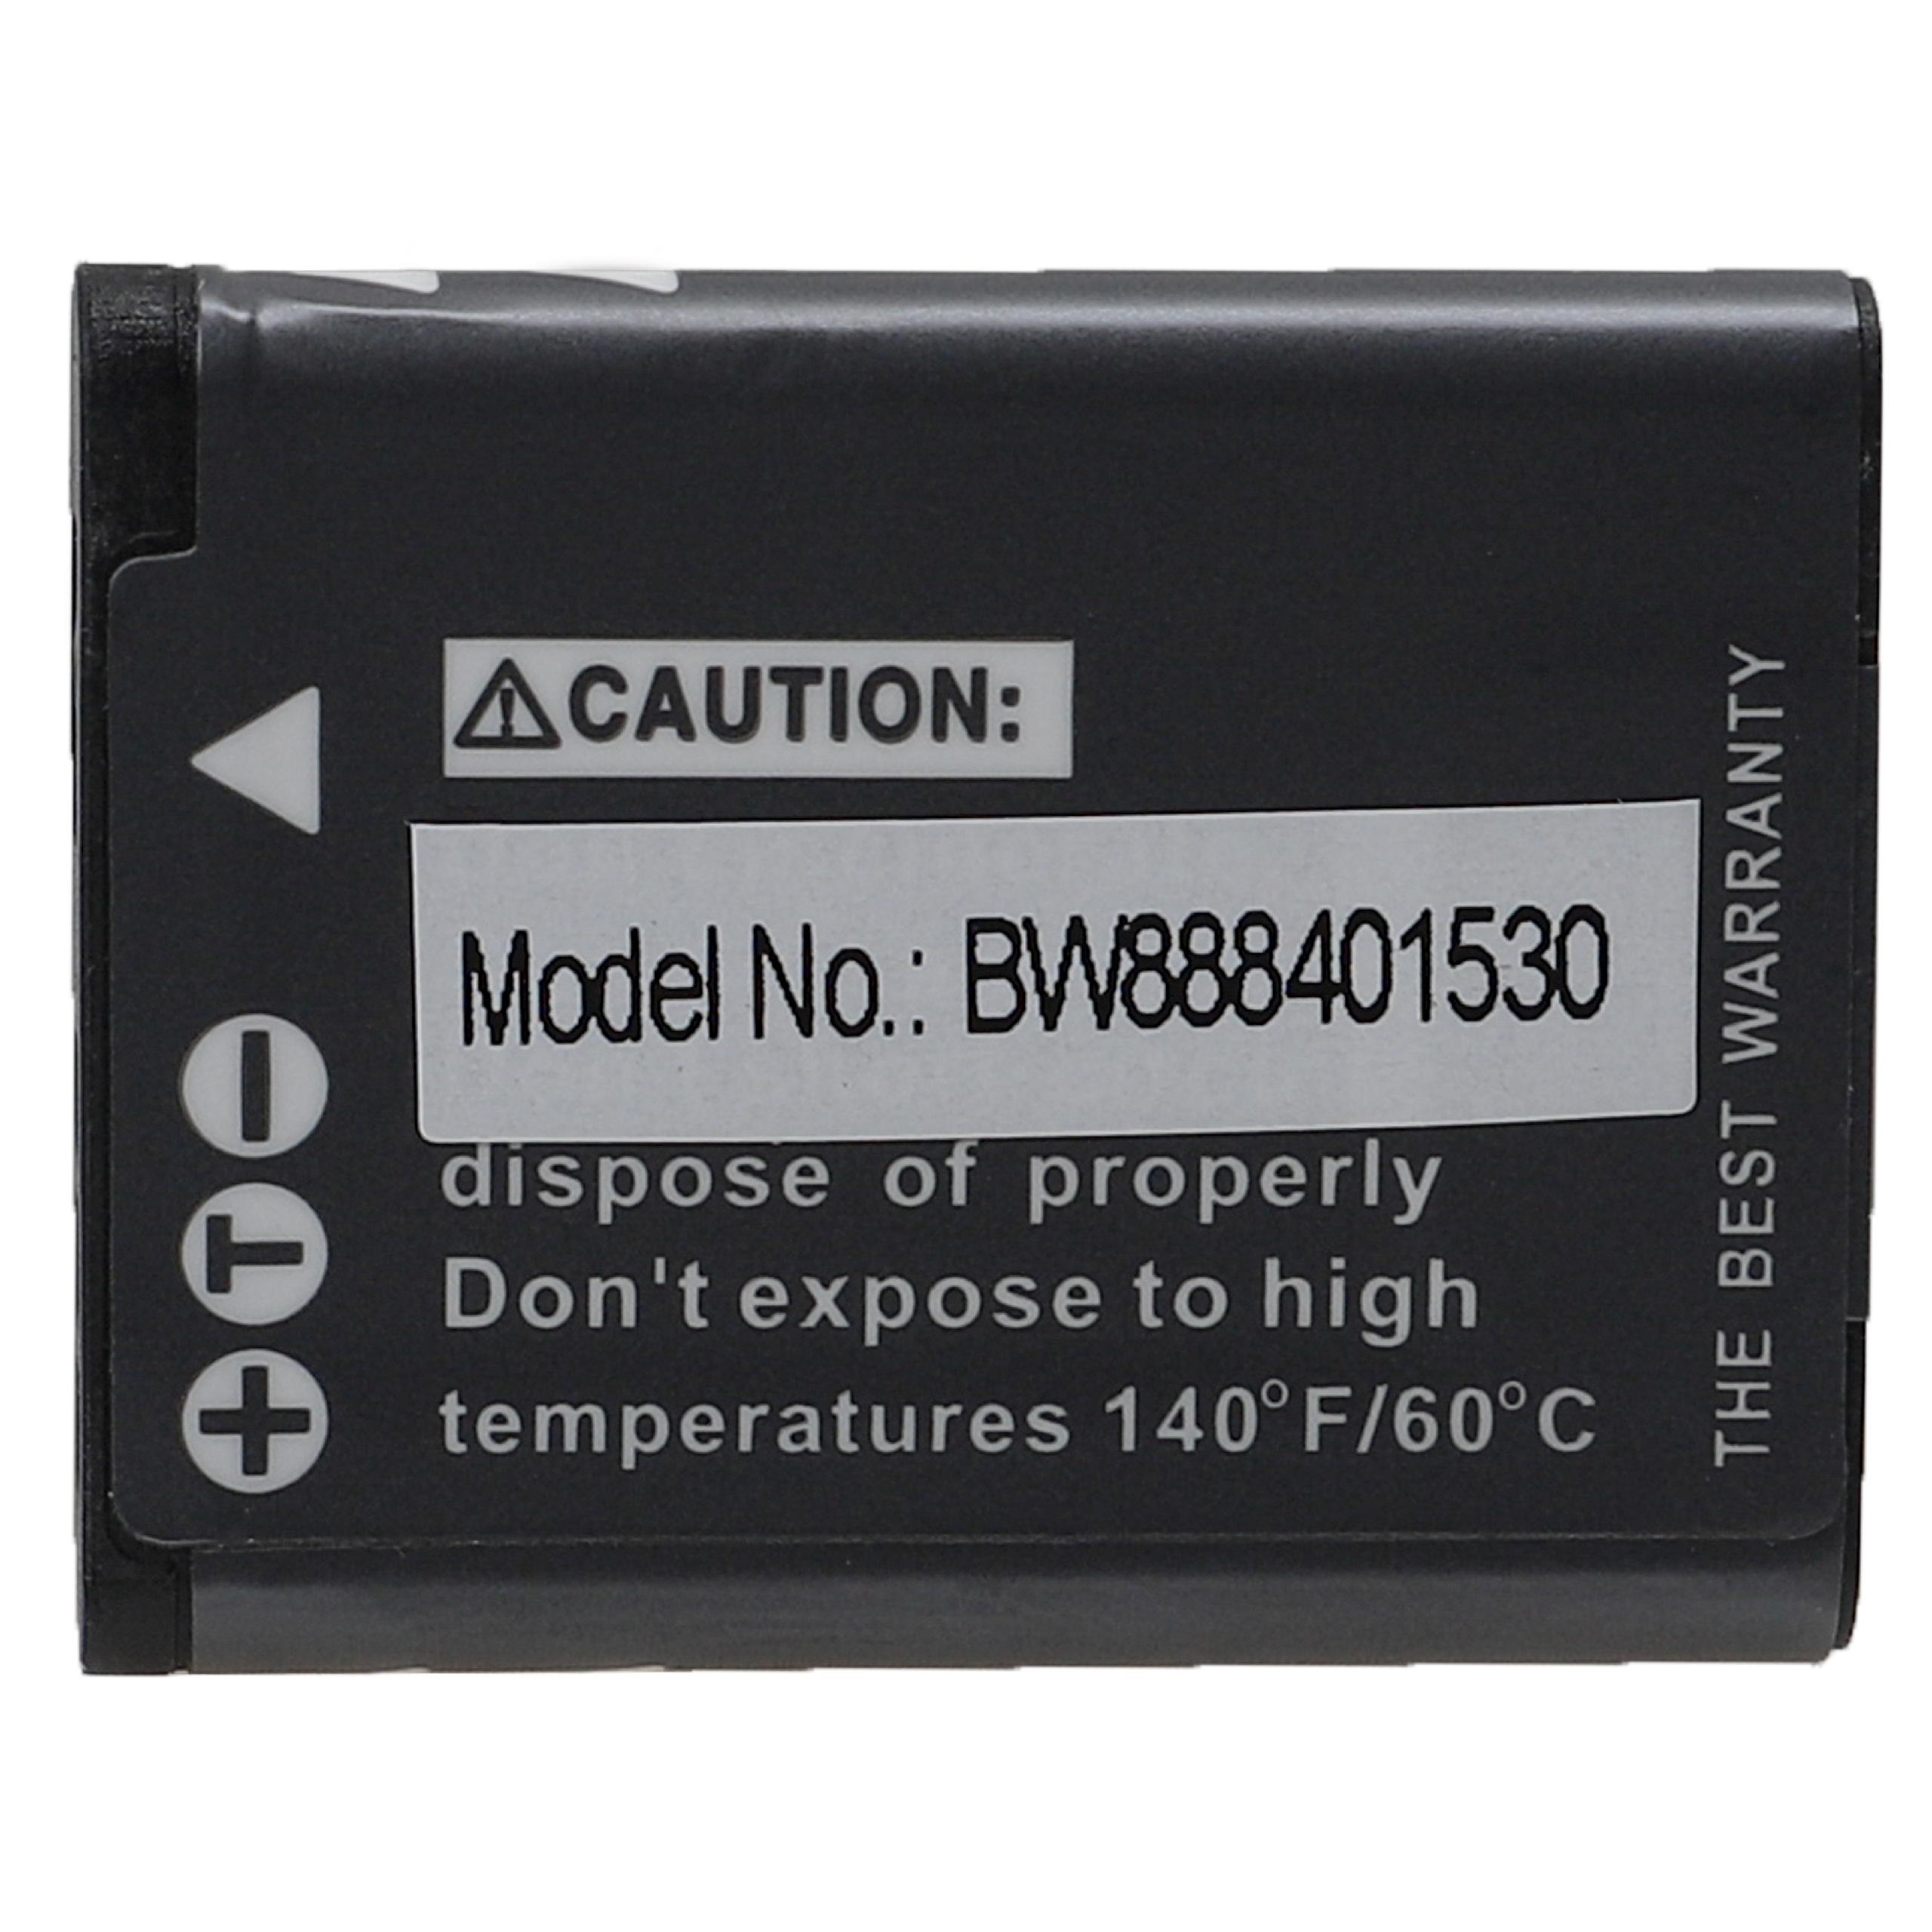 Batterie remplace Panasonic VW-VBX070E, VW-VBX070 pour appareil photo - 700mAh 3,7V Li-ion